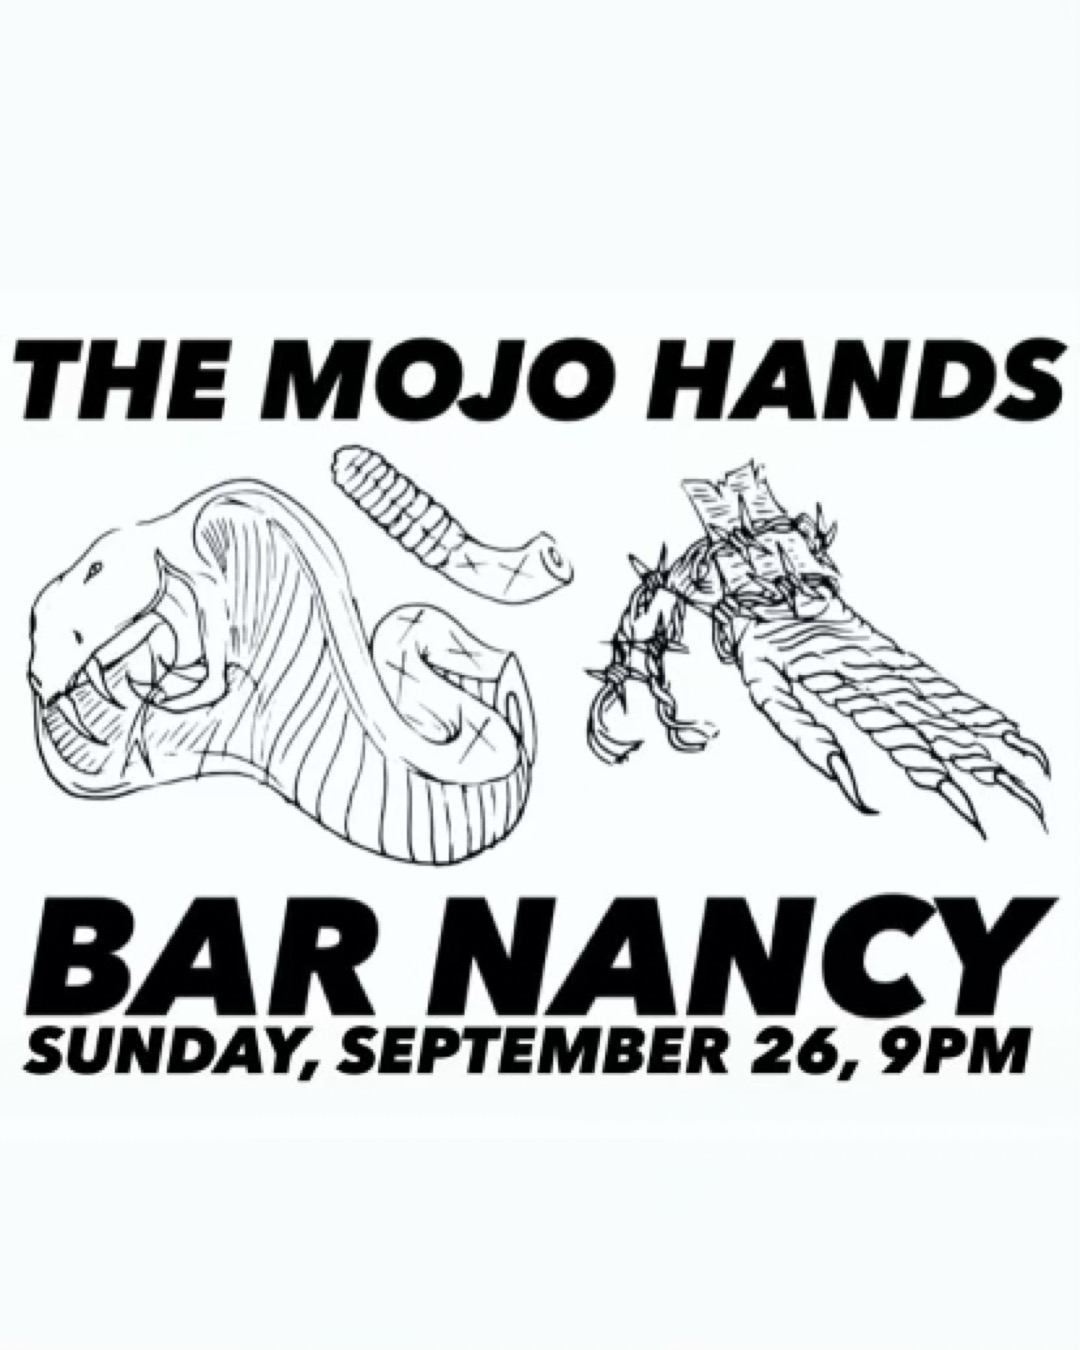 The Mojo Hands at Bar Nancy - Friday Sep 26 at 9PM